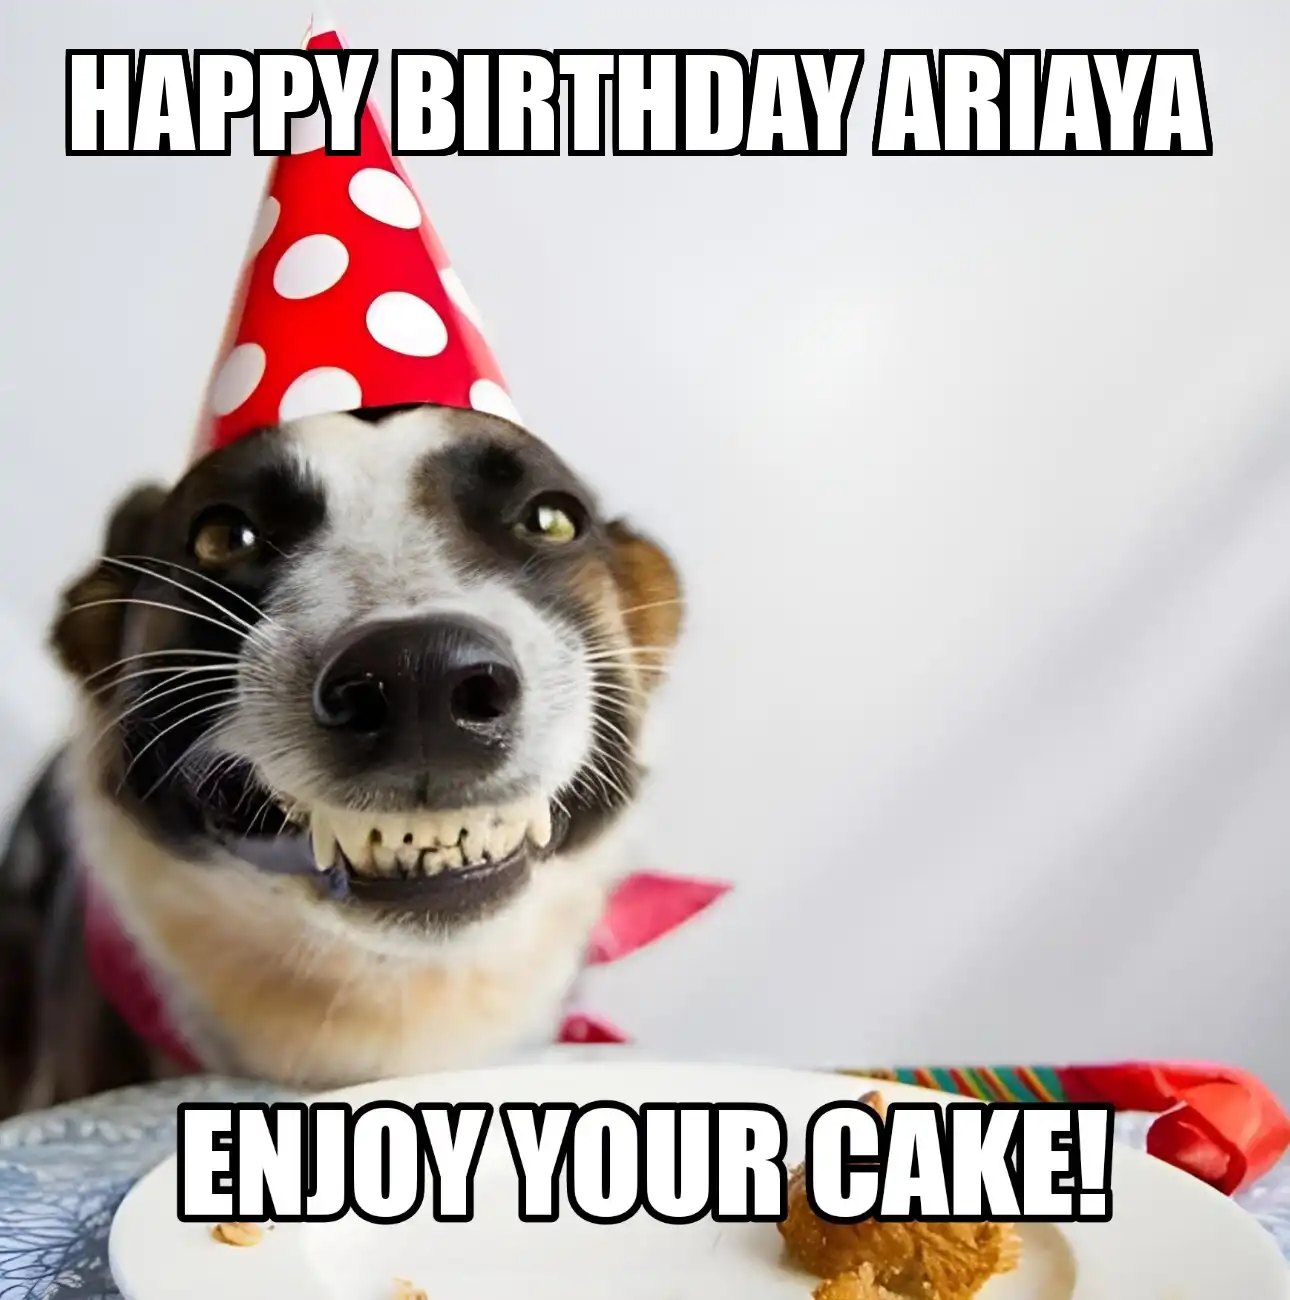 Happy Birthday Ariaya Enjoy Your Cake Dog Meme